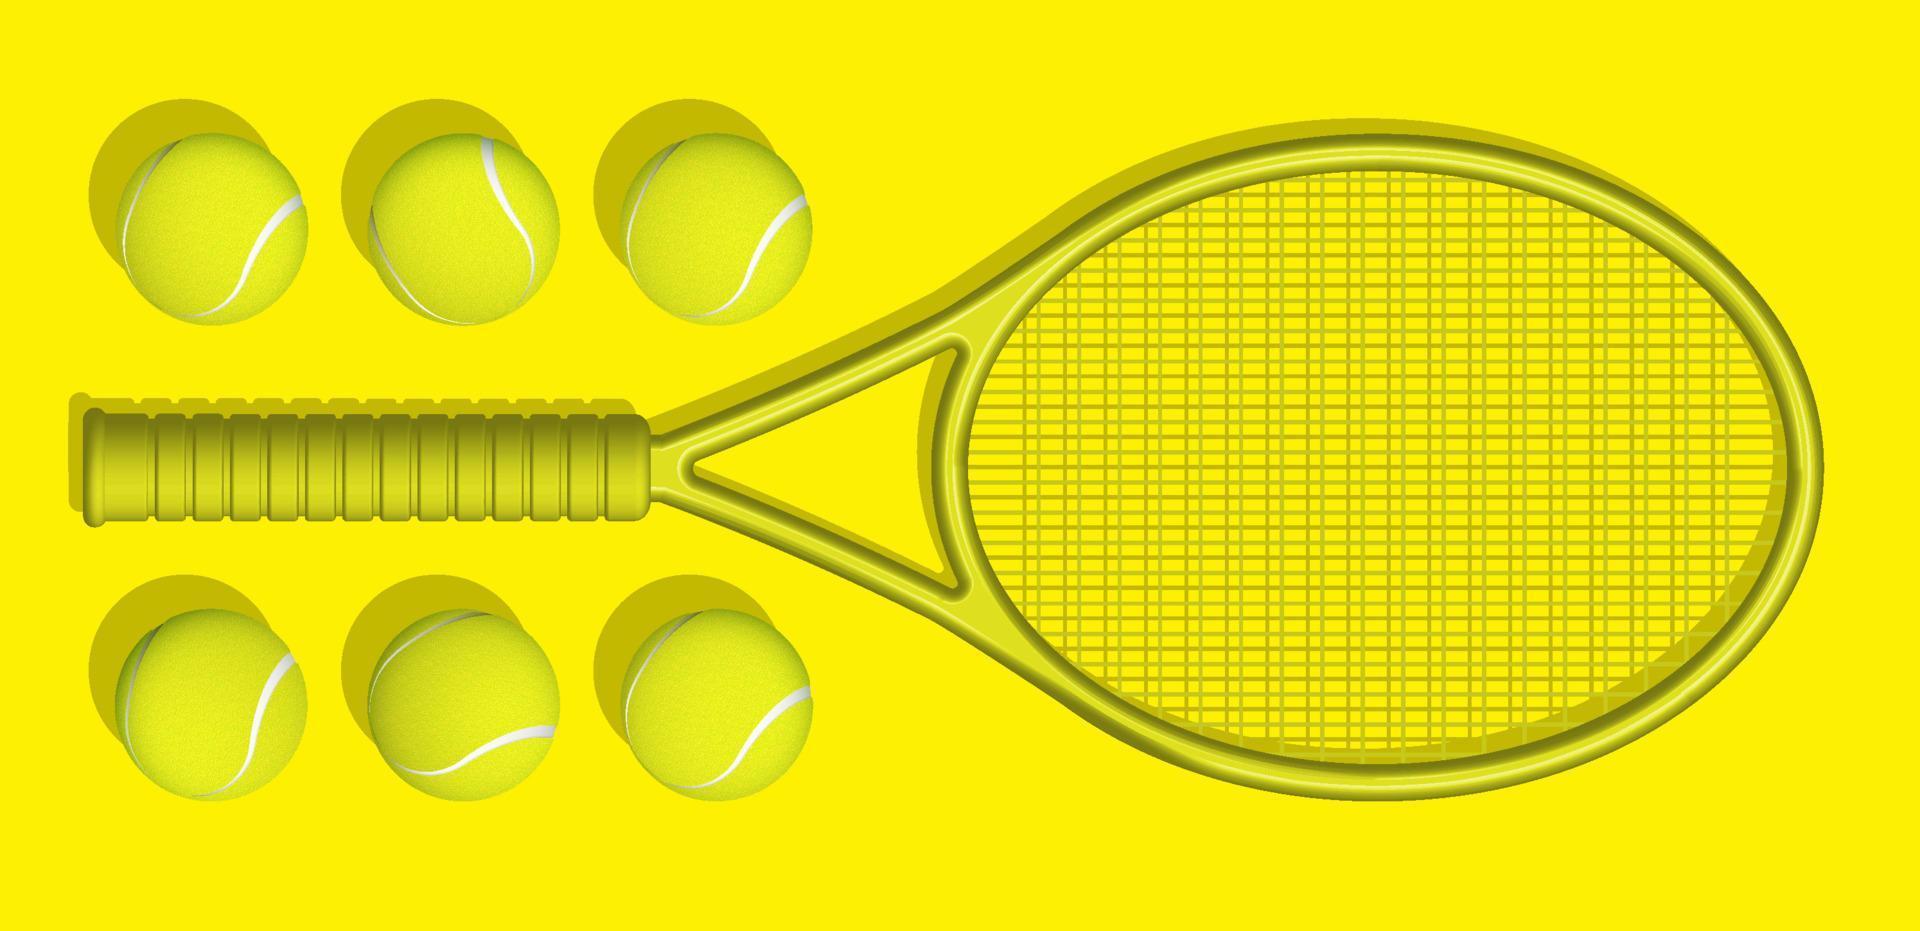 gelbe tennisschläger und bälle liegen auf gelbem hintergrund des tennisplatzes. Sportausrüstung und Inventar. realistischer Vektor